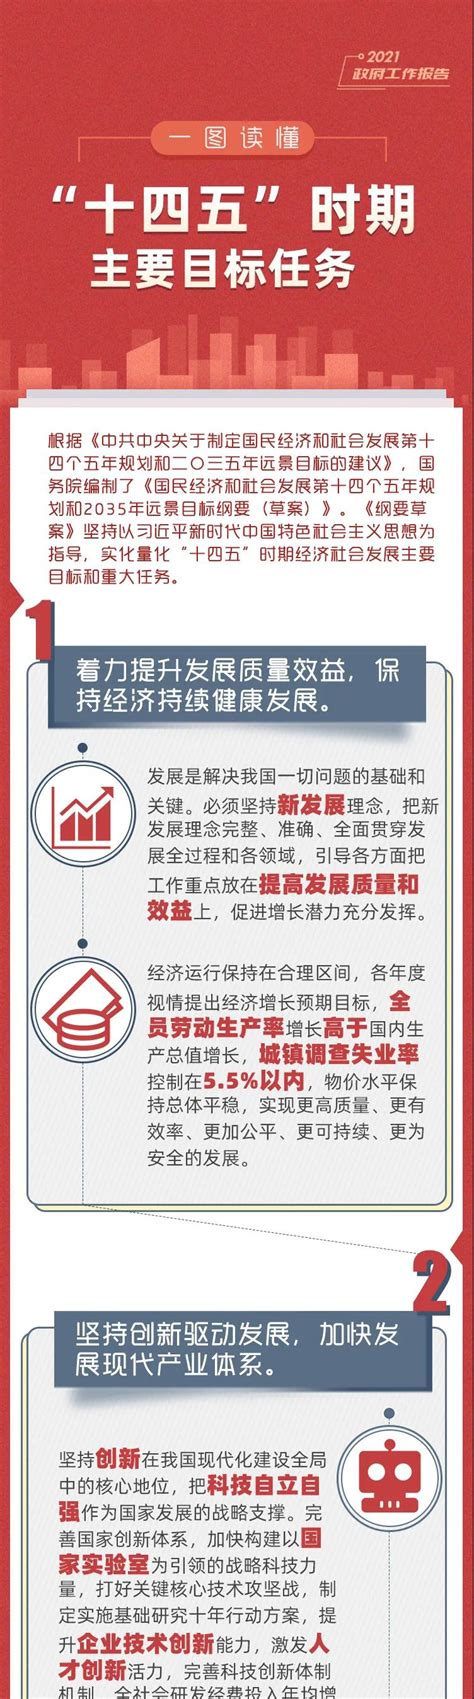 预见未来！一图看懂北京“十四五”规划纲要 - 封面新闻